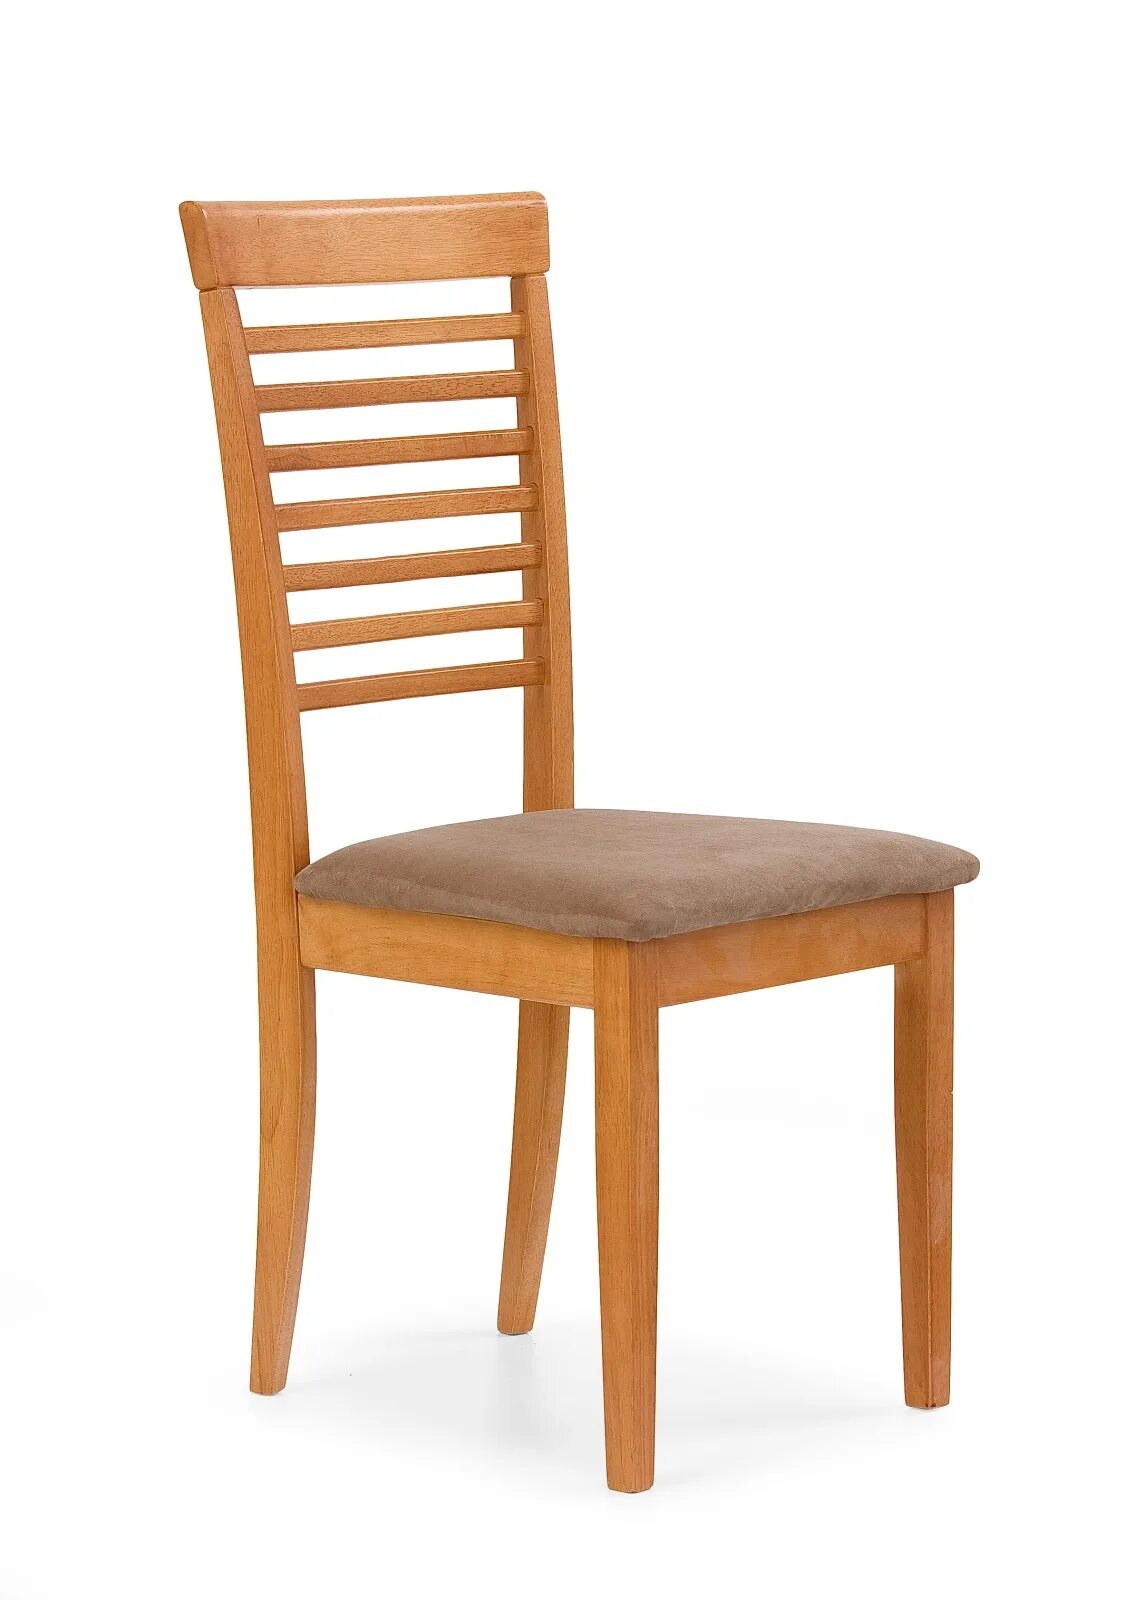 Купить стул каталог. Стул. Стул деревянный. Кухонные стулья. Стулья деревянные с мягким сиденьем.